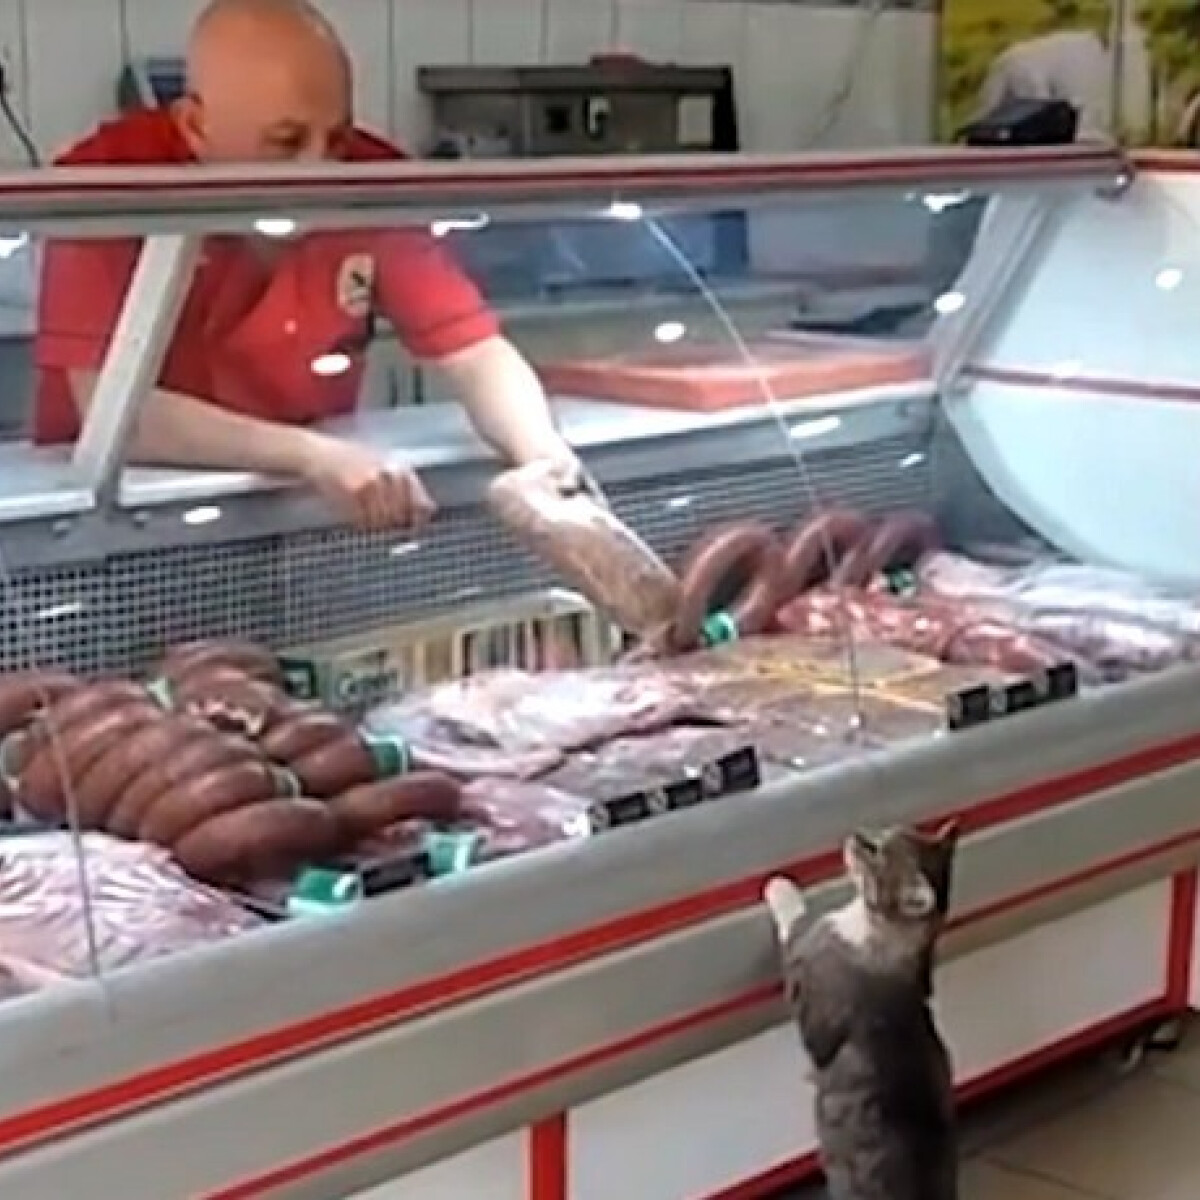 Imádja a net a cicát, aki a henteshez megy bevásárolni